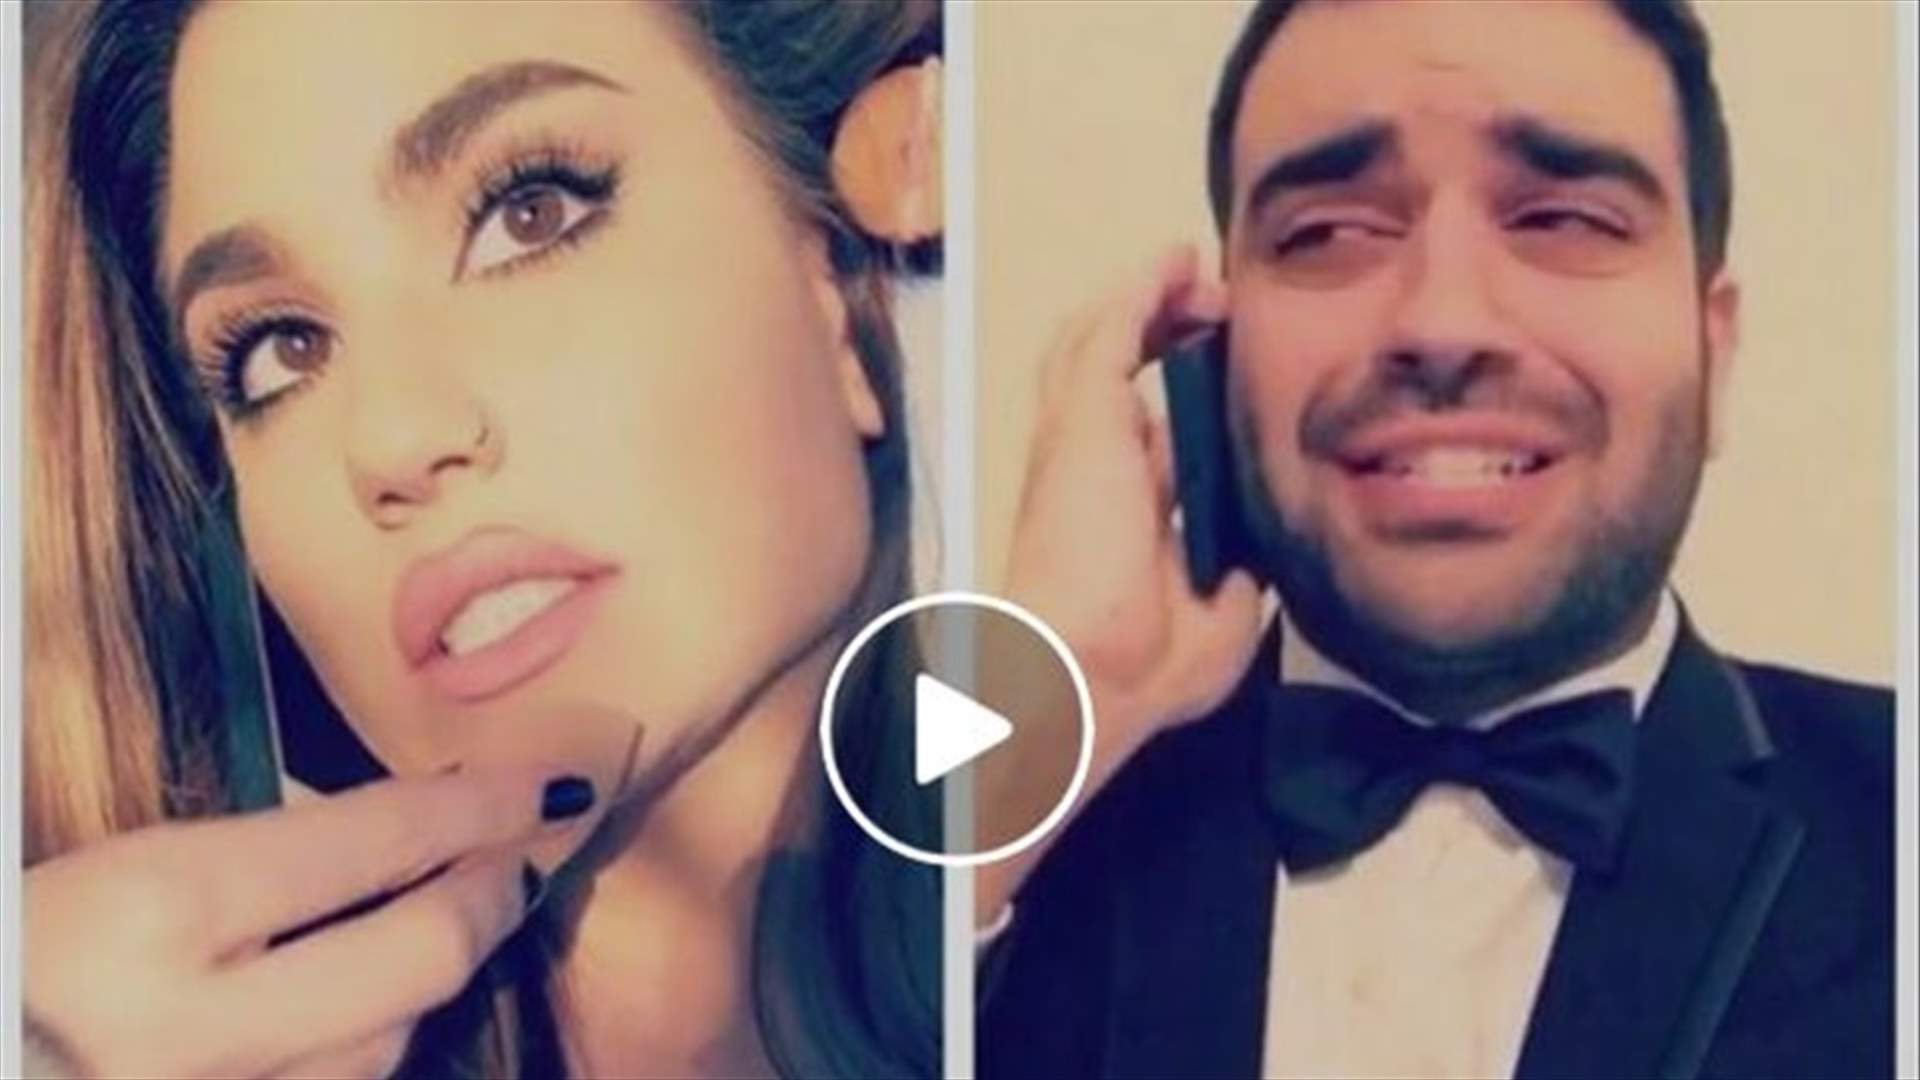 فيديو حصد 1.5 مليون مشاهد خلال يومين... شادي طعمة كوميدي سوري اجتاح الانترنت